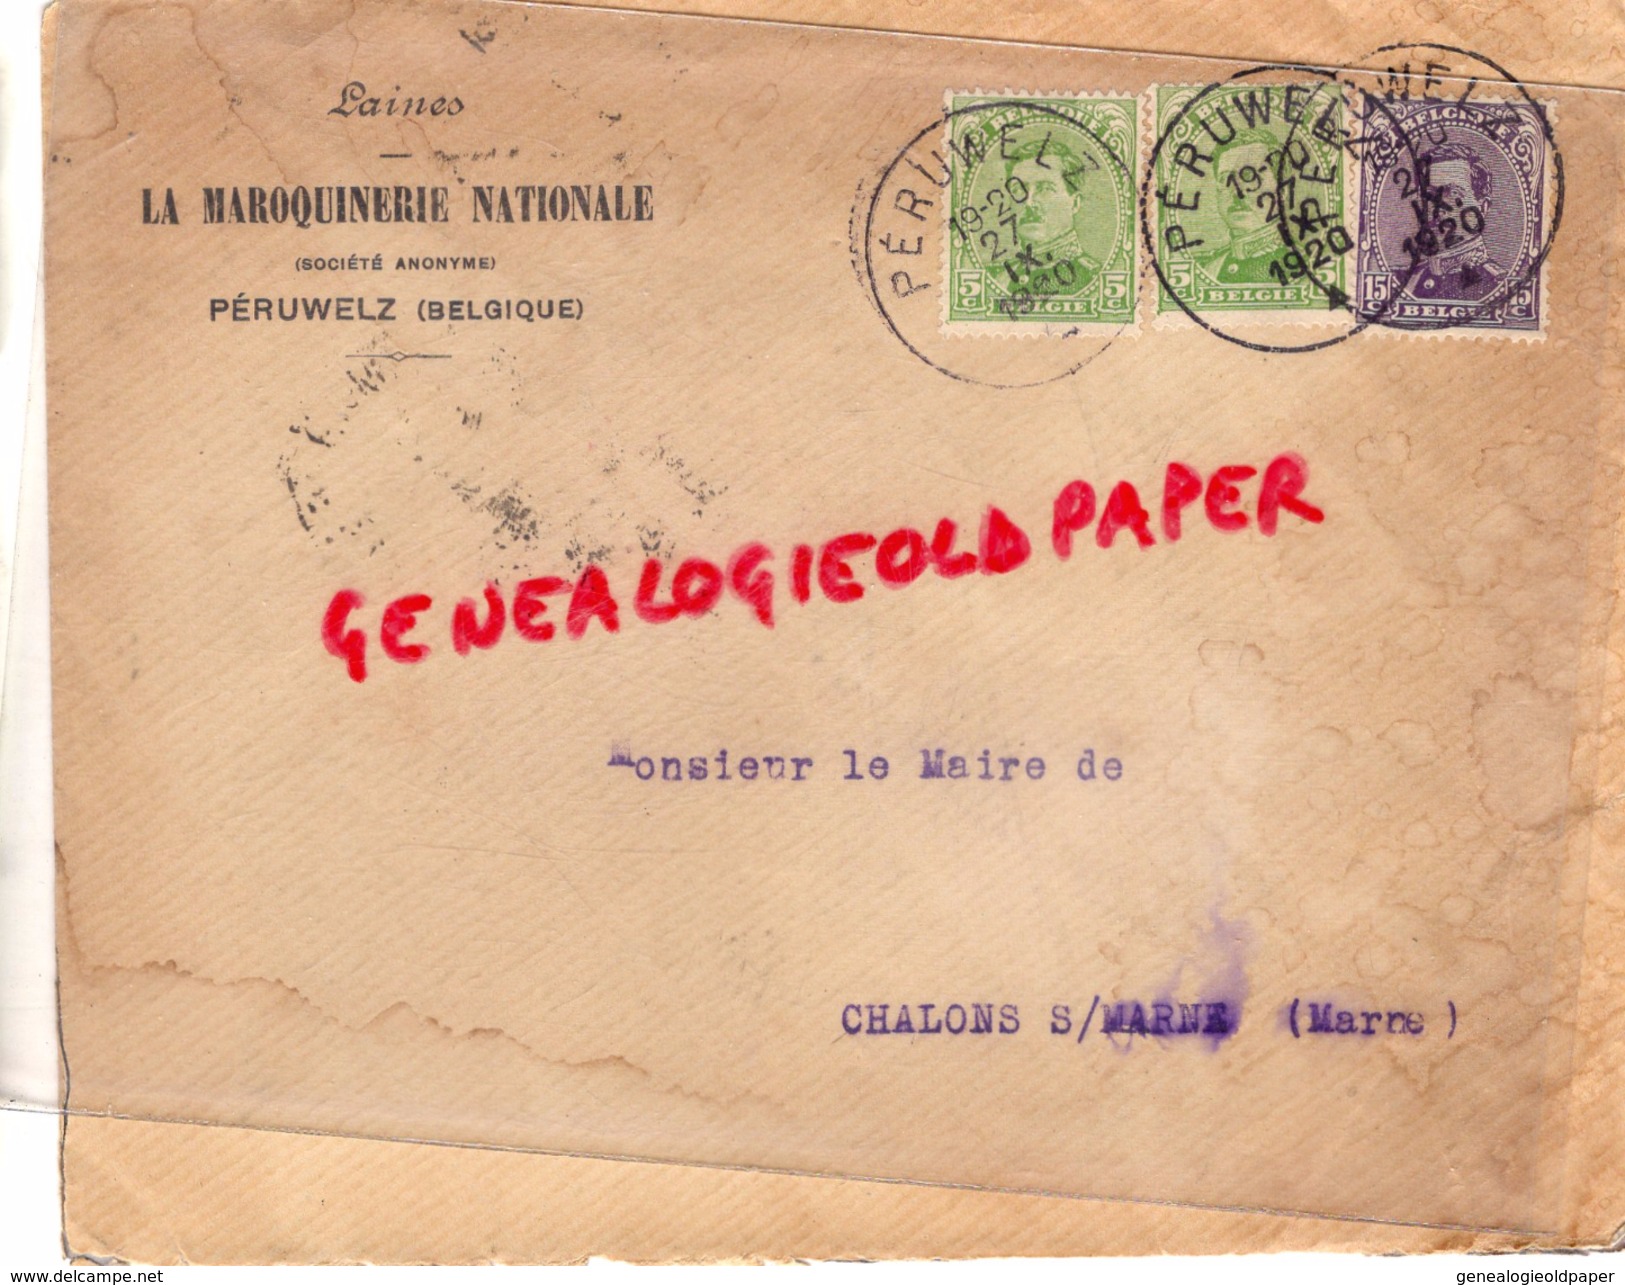 BELGIQUE- PERUWELZ- LA MAROQUINERIE NATIONALE- LAINES- A MR. LE MAIRE DE CHALONS SUR MARNE-1920 - 1900 – 1949